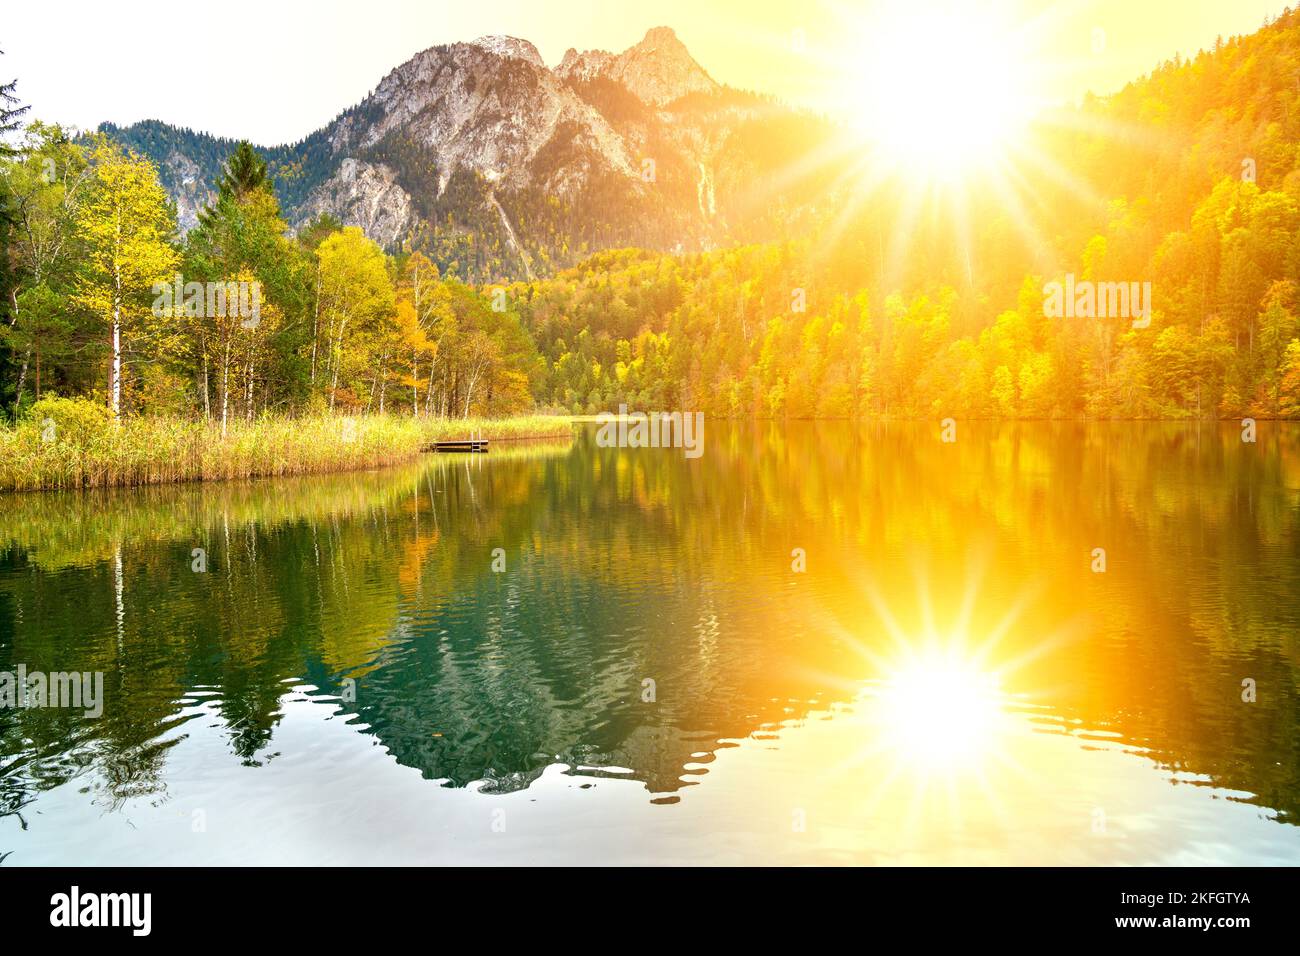 paysage panoramique avec lac, chaîne de montagnes et soleil sur le ciel Banque D'Images